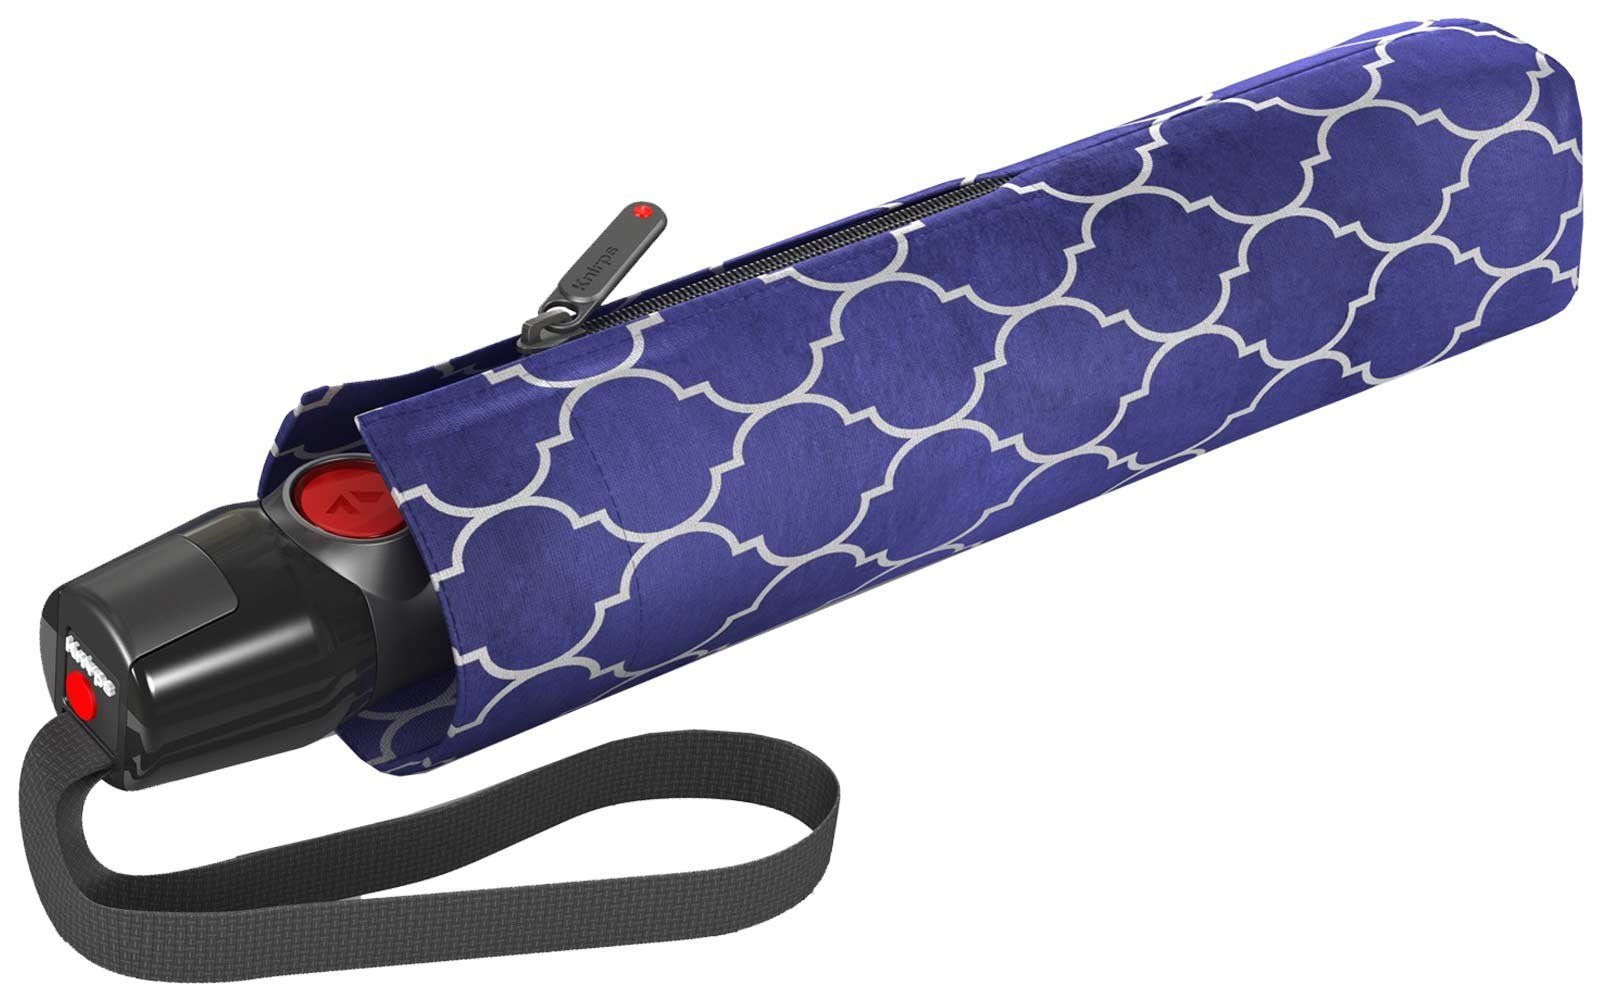 den besonders Auf-Zu-Automatik, haltbar Schirm stabiler Speichen Knirps® leichter, blau durch Fiberglas Taschenregenschirm in mit